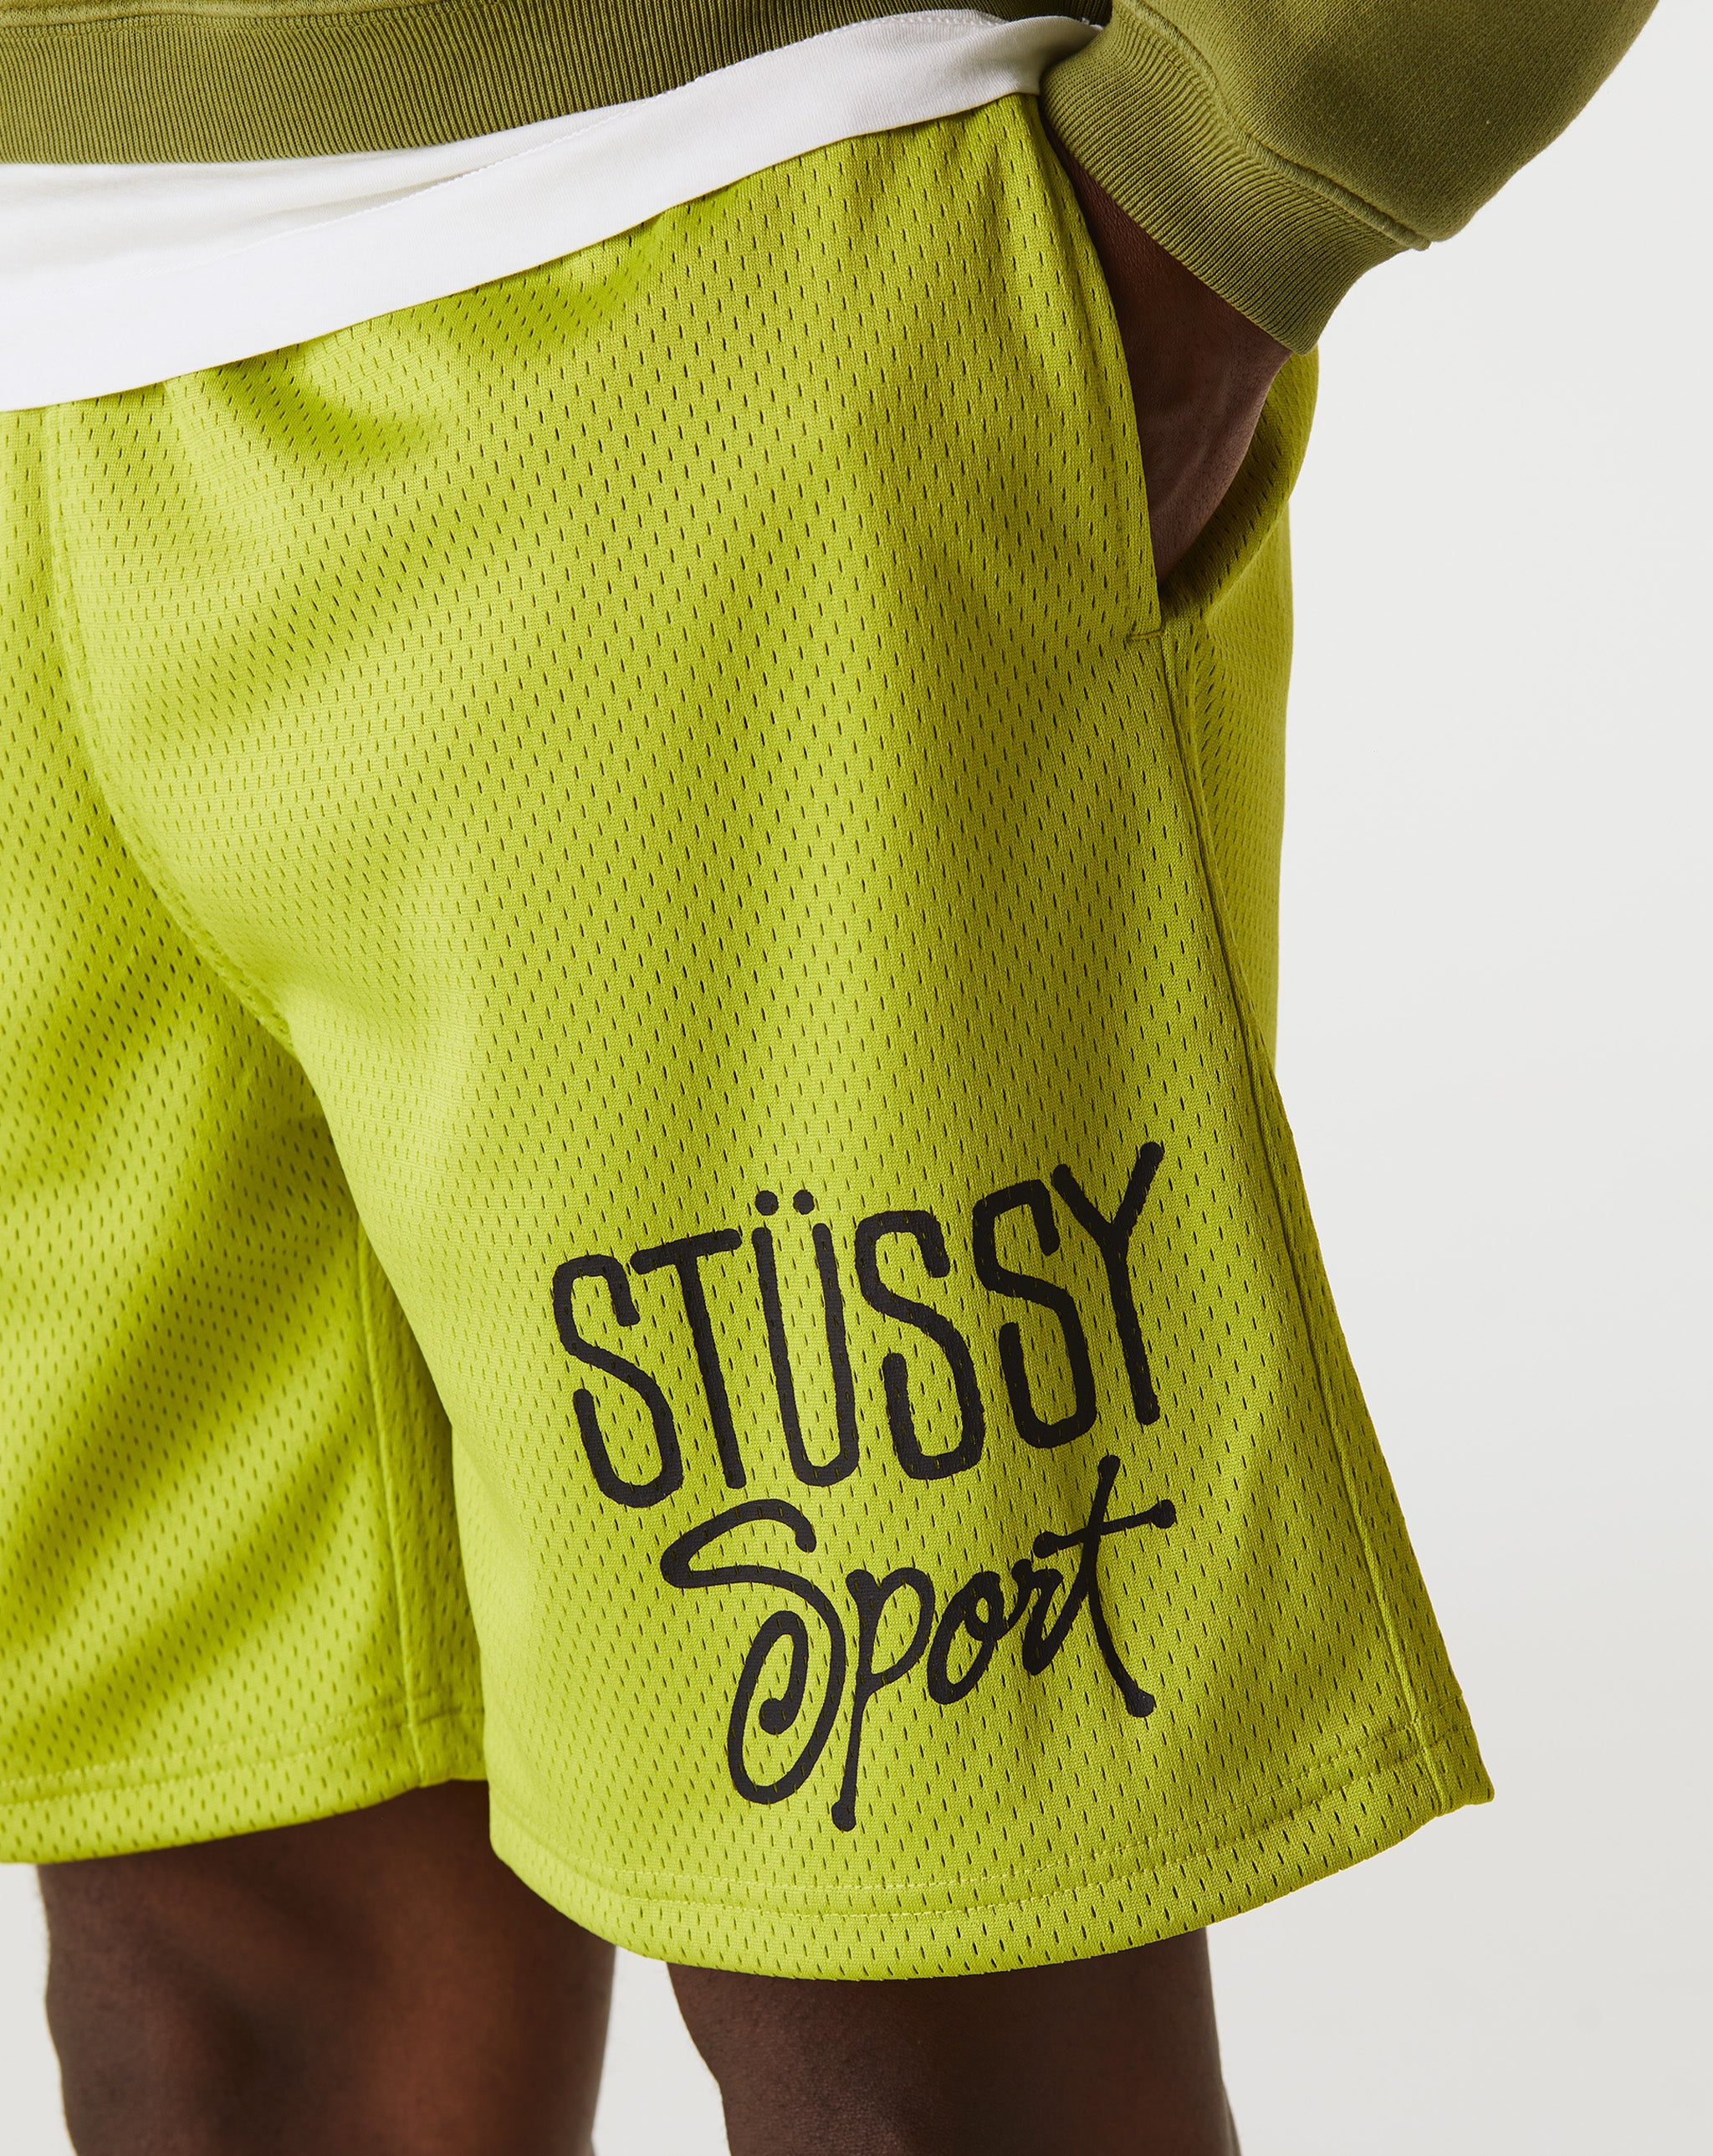 Stüssy Mesh Sport Shorts  - Cheap Urlfreeze Jordan outlet